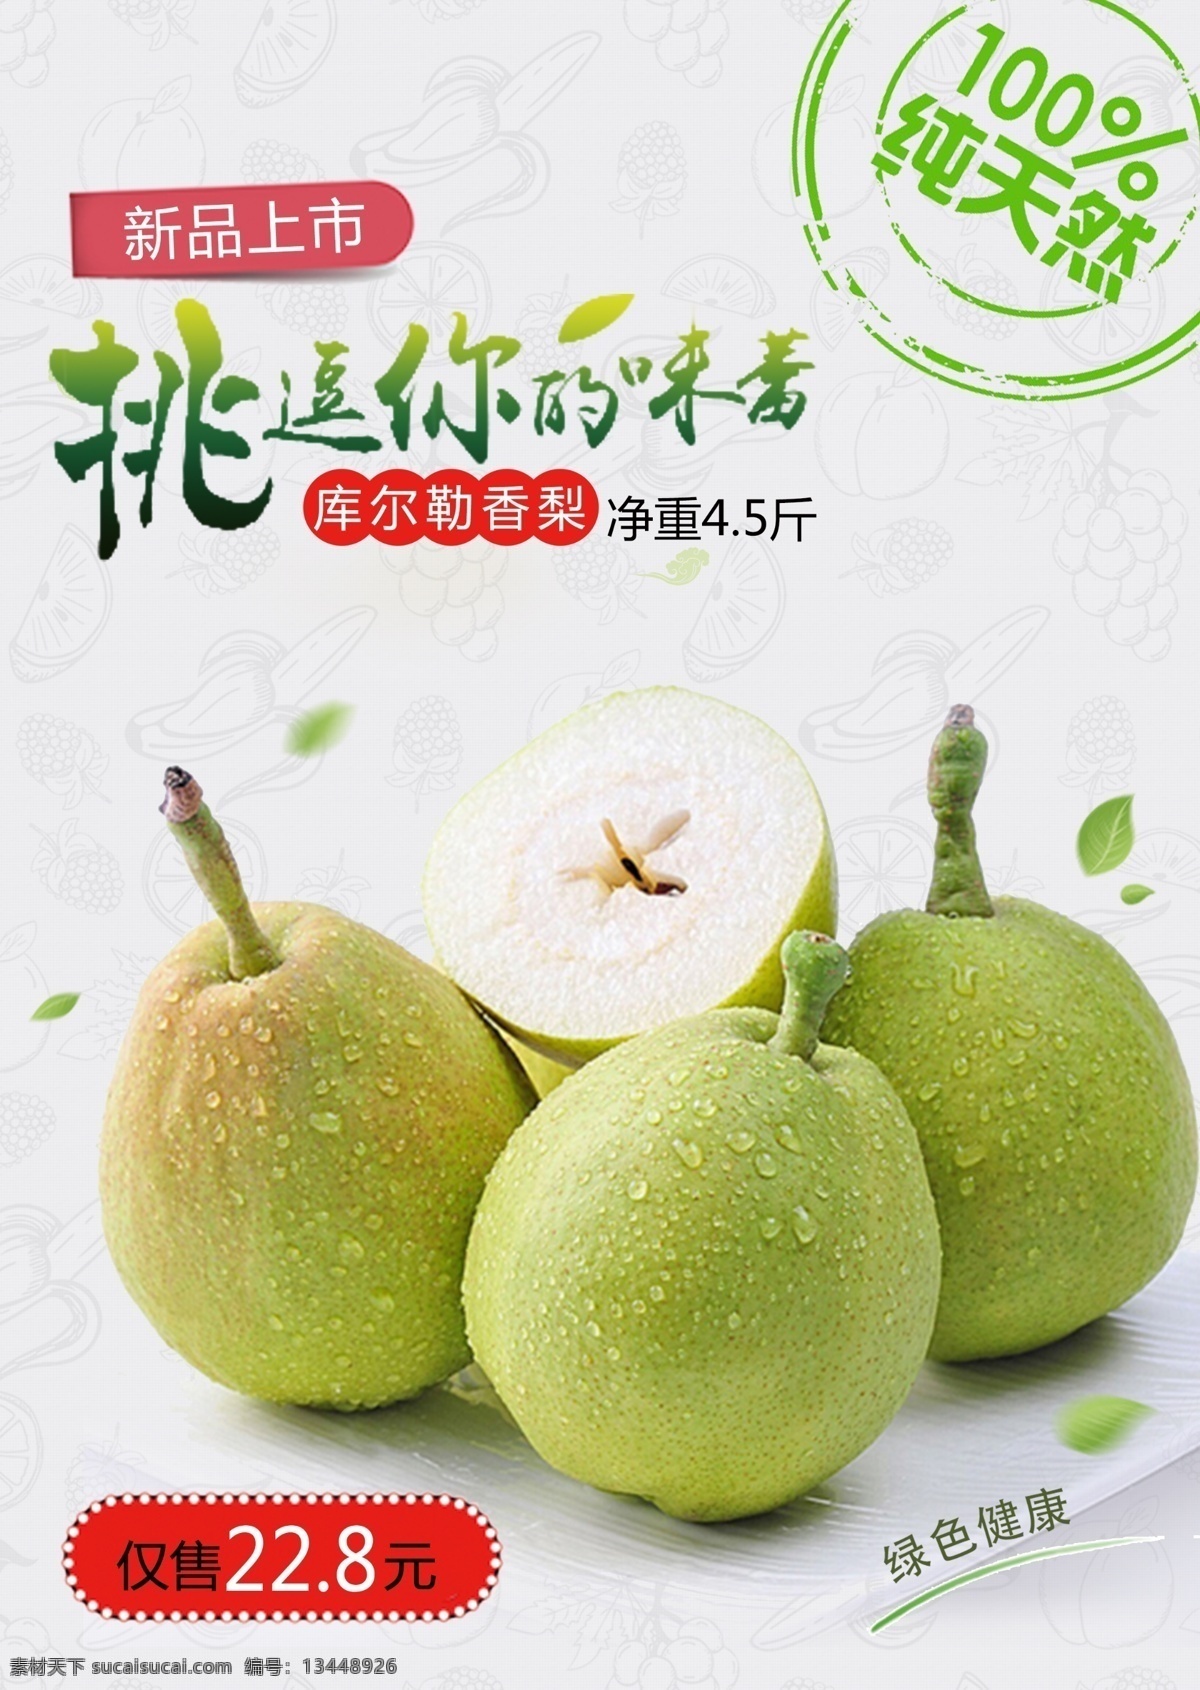 香梨 库尔勒 绿色 水果 促销 海报 绿色水果